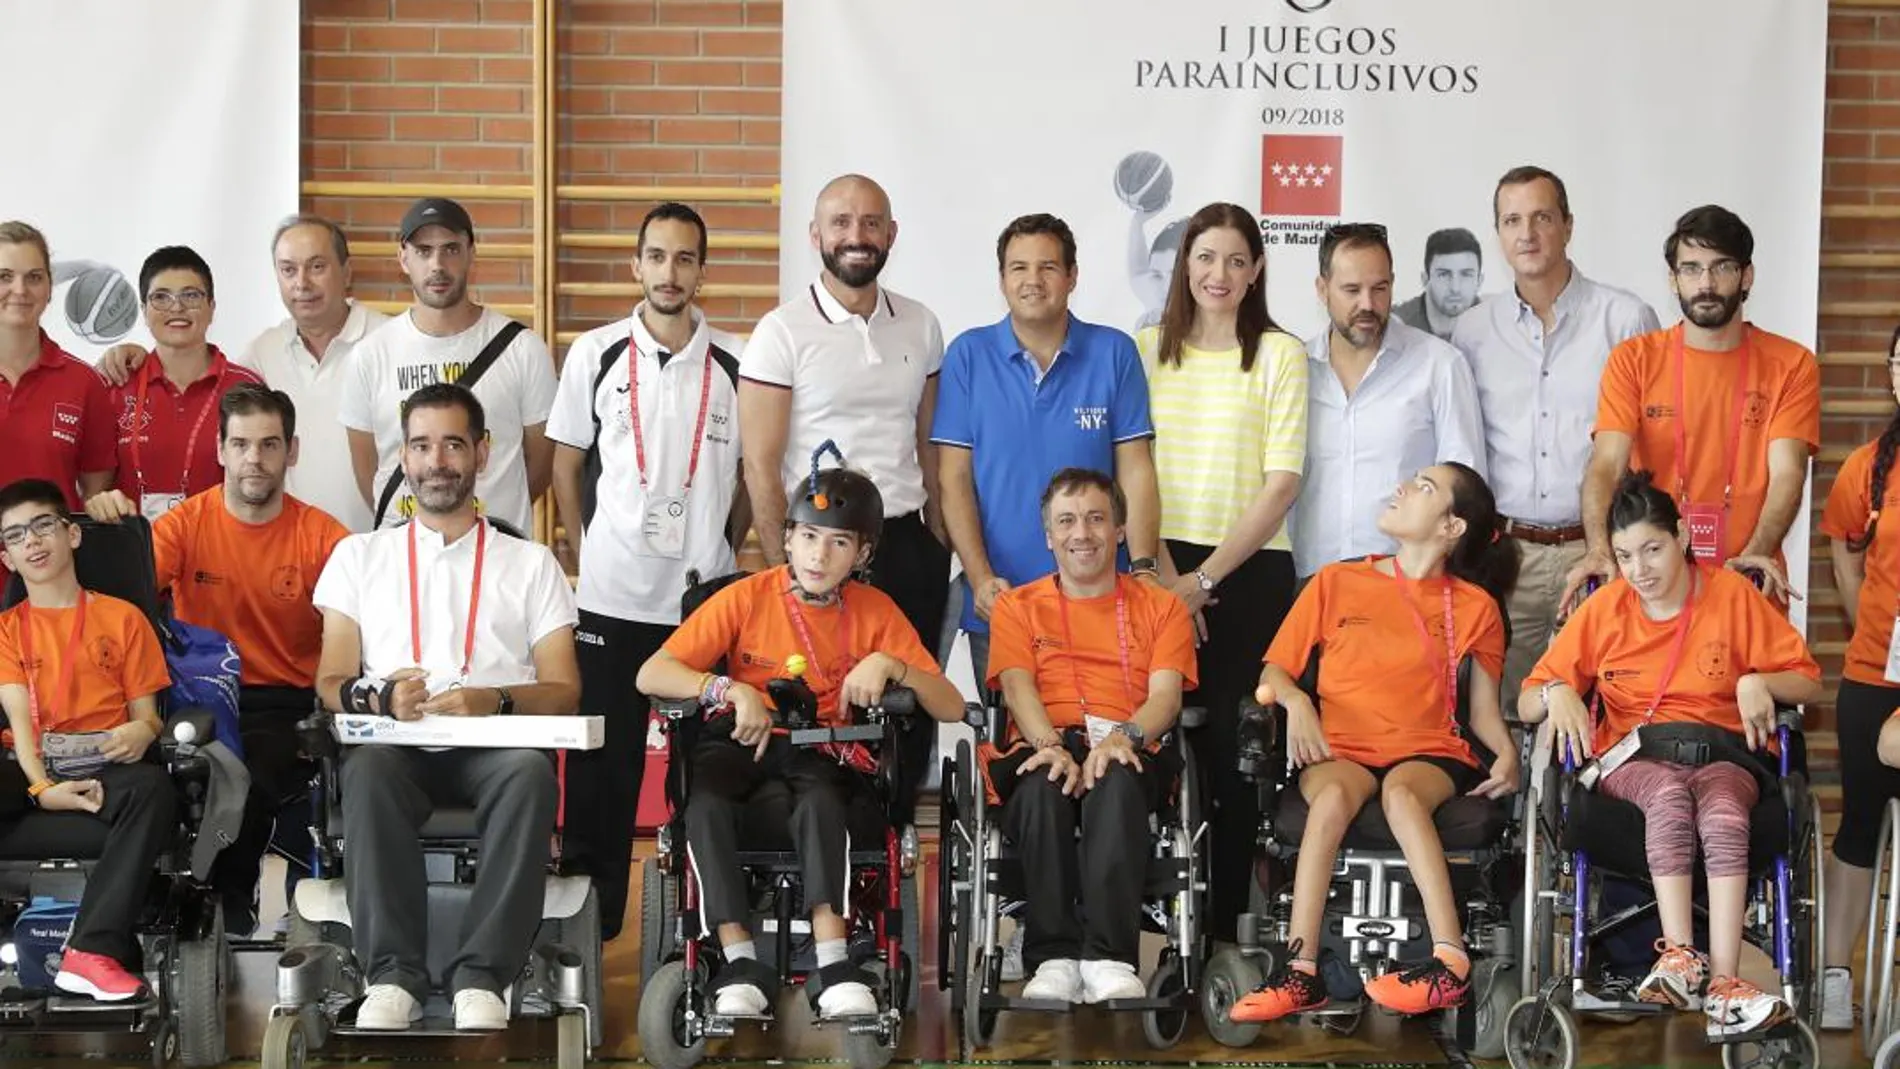 Madrid acoge los I Juegos Parainclusivos, un acontecimiento deportivo pionero en España